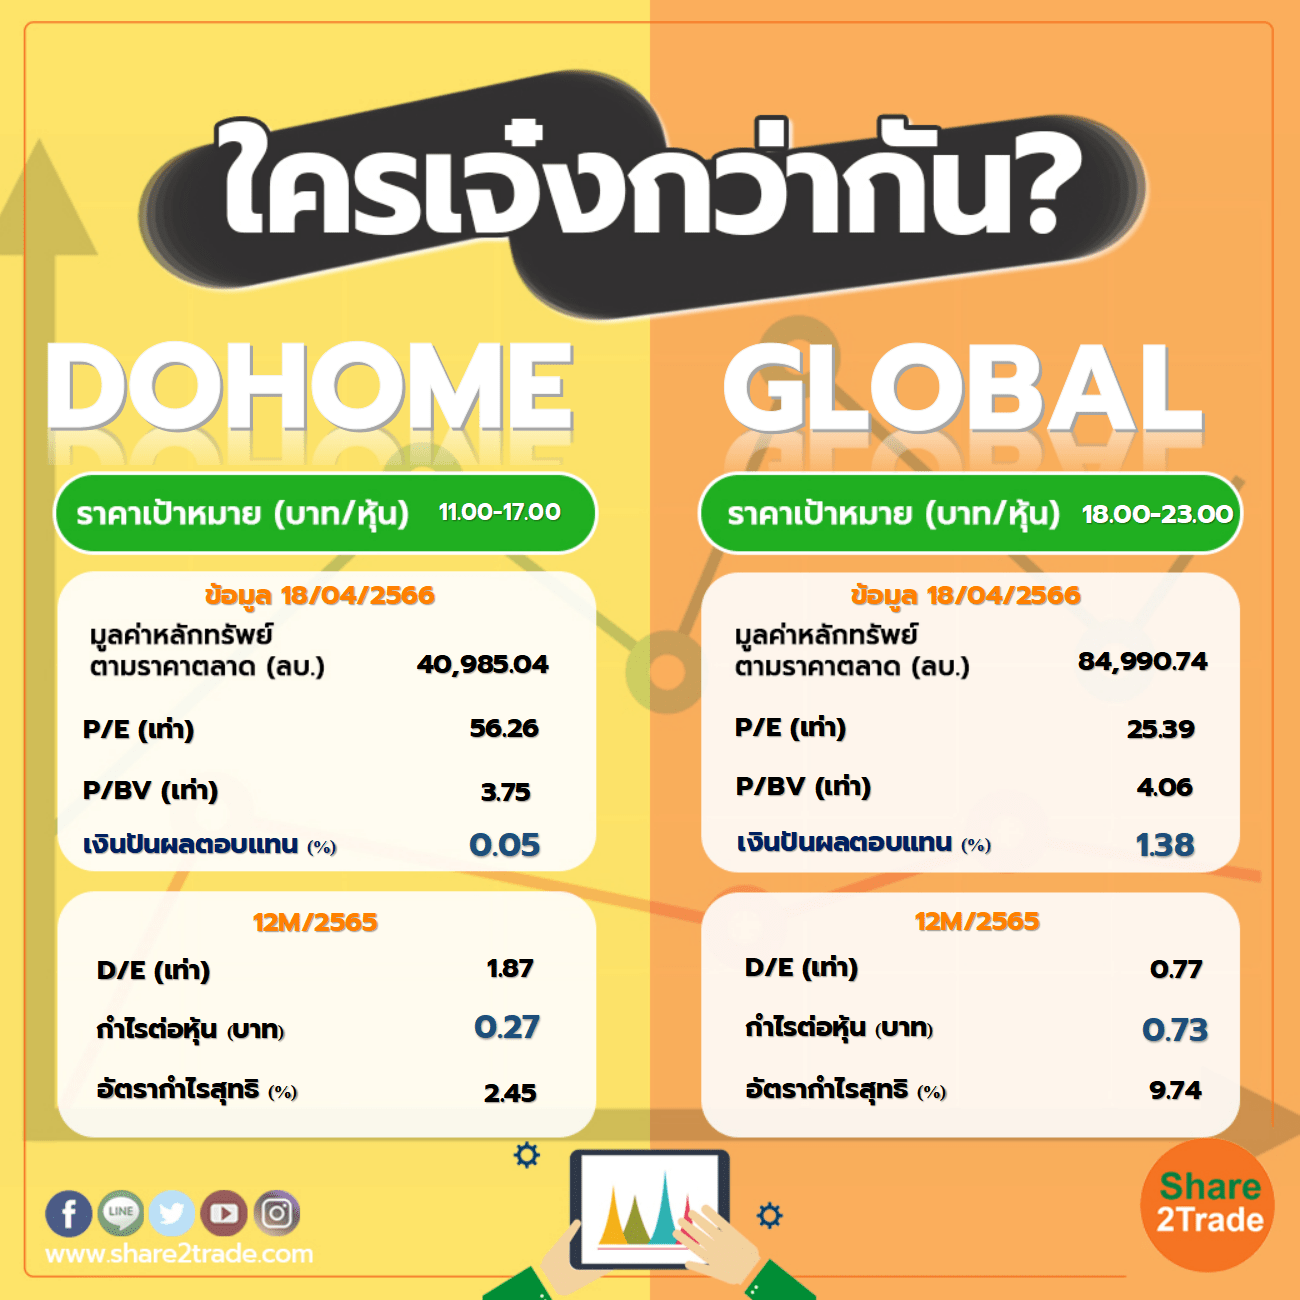 ใครเจ๋งกว่ากัน "DOHOME" VS "GLOBAL"